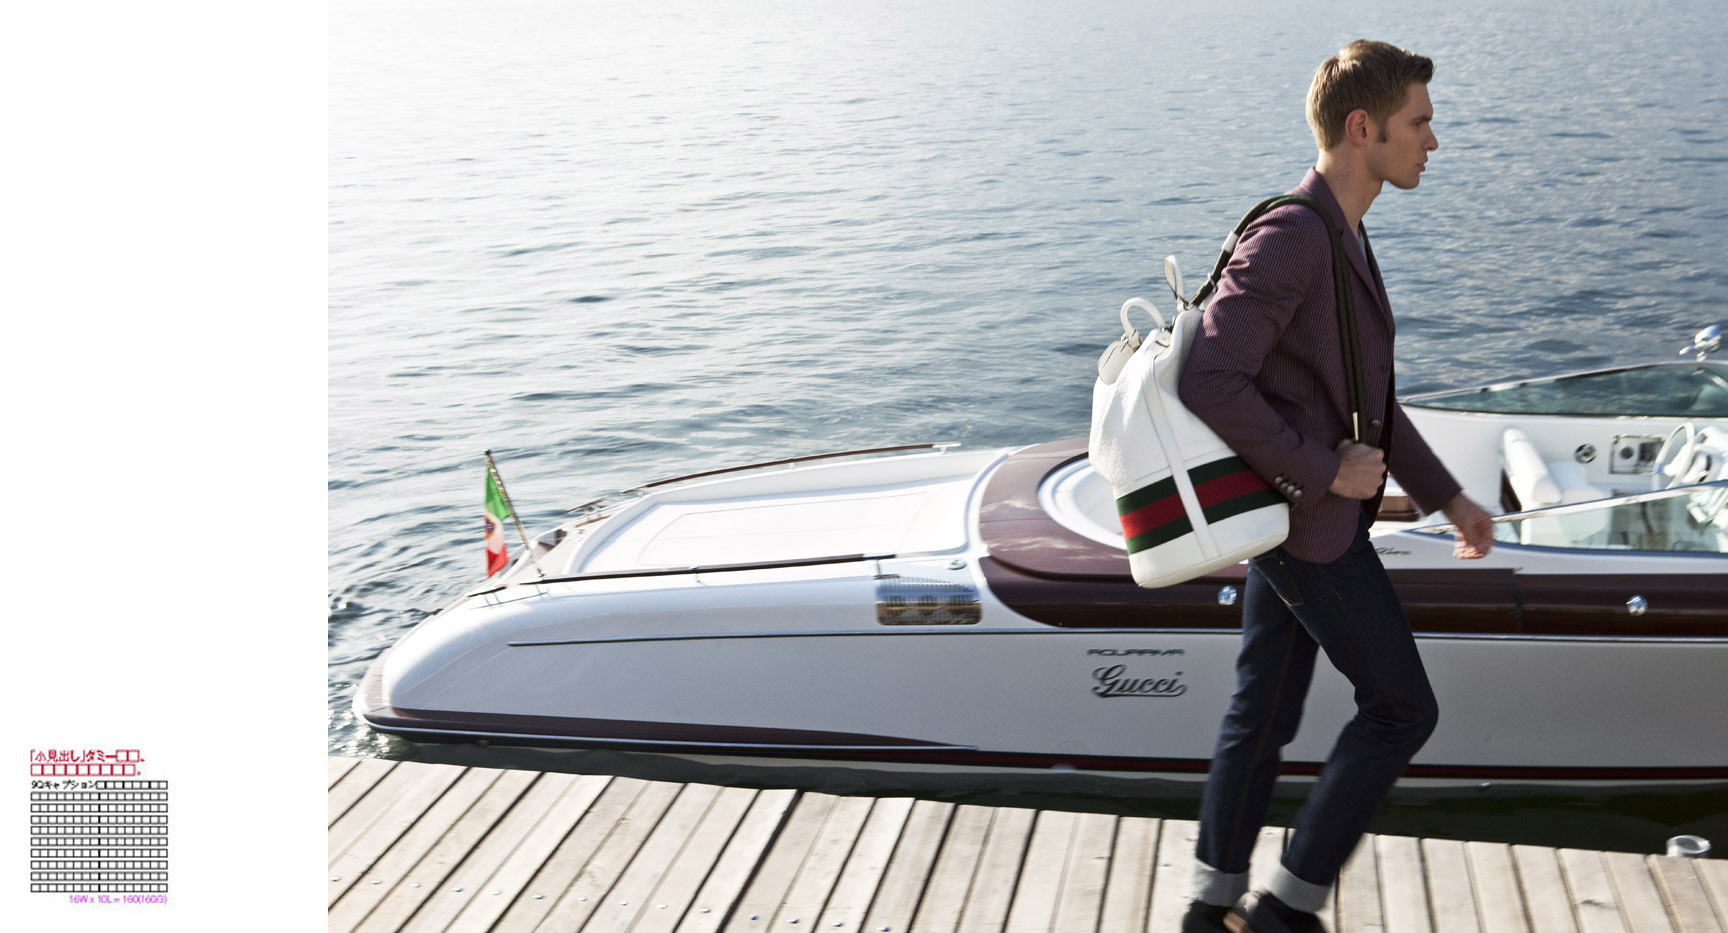 Gucci & Riva Boats for Pen Magazine